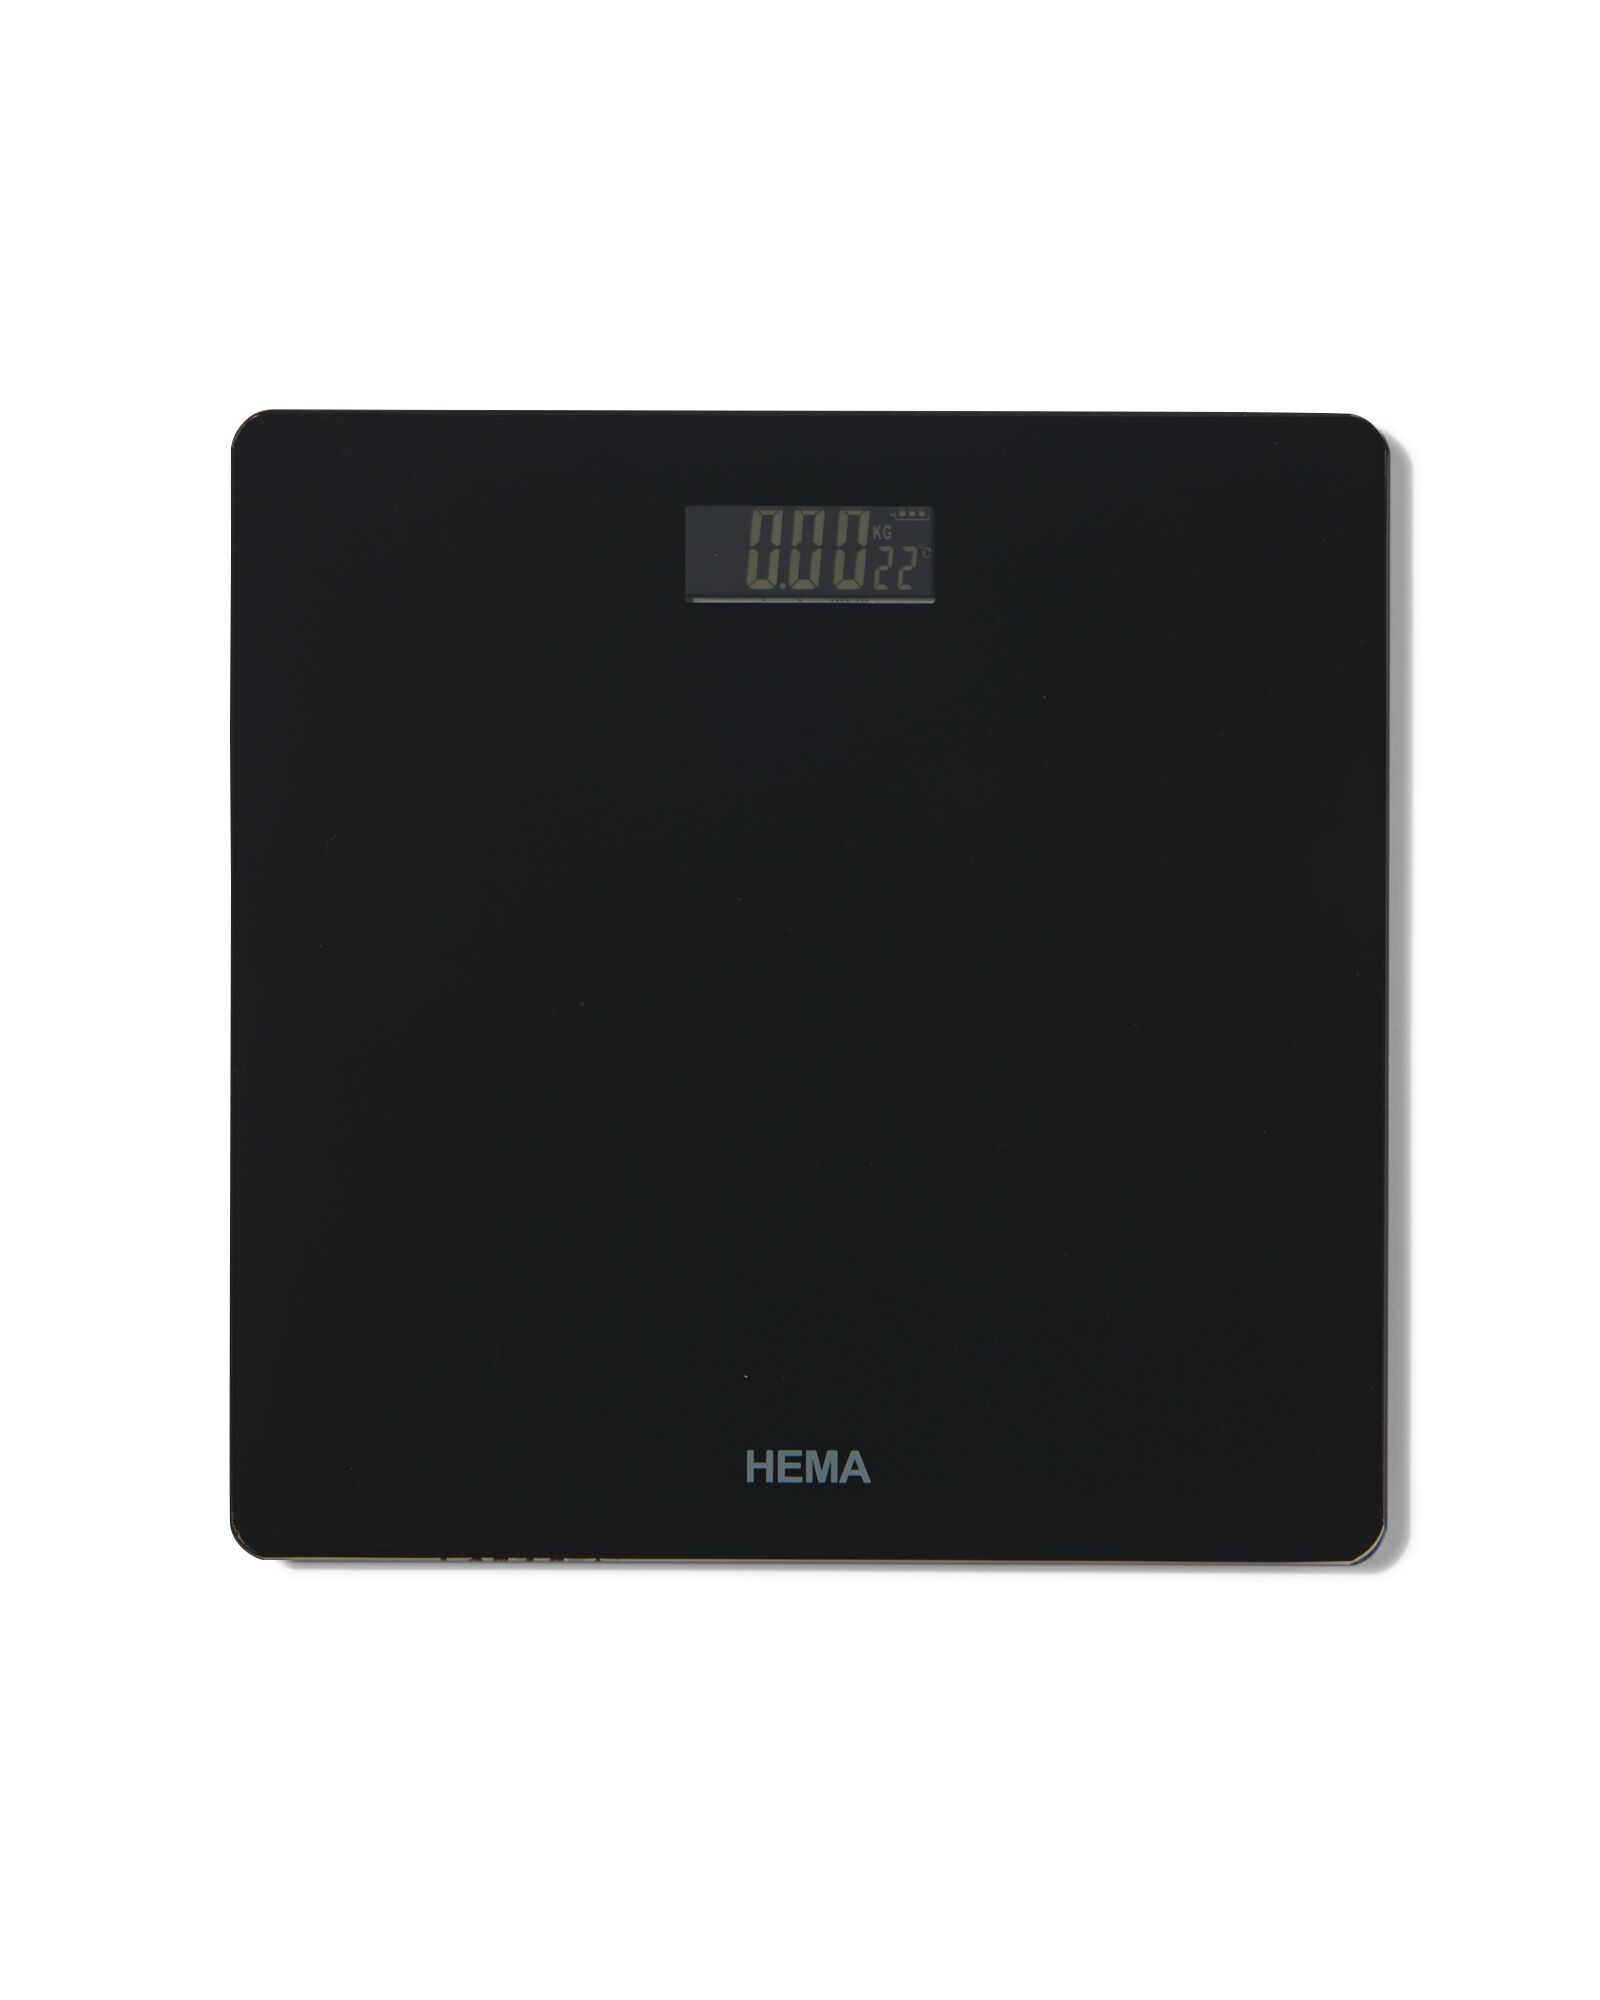 pèse-personne digital noir - 80310036 - HEMA